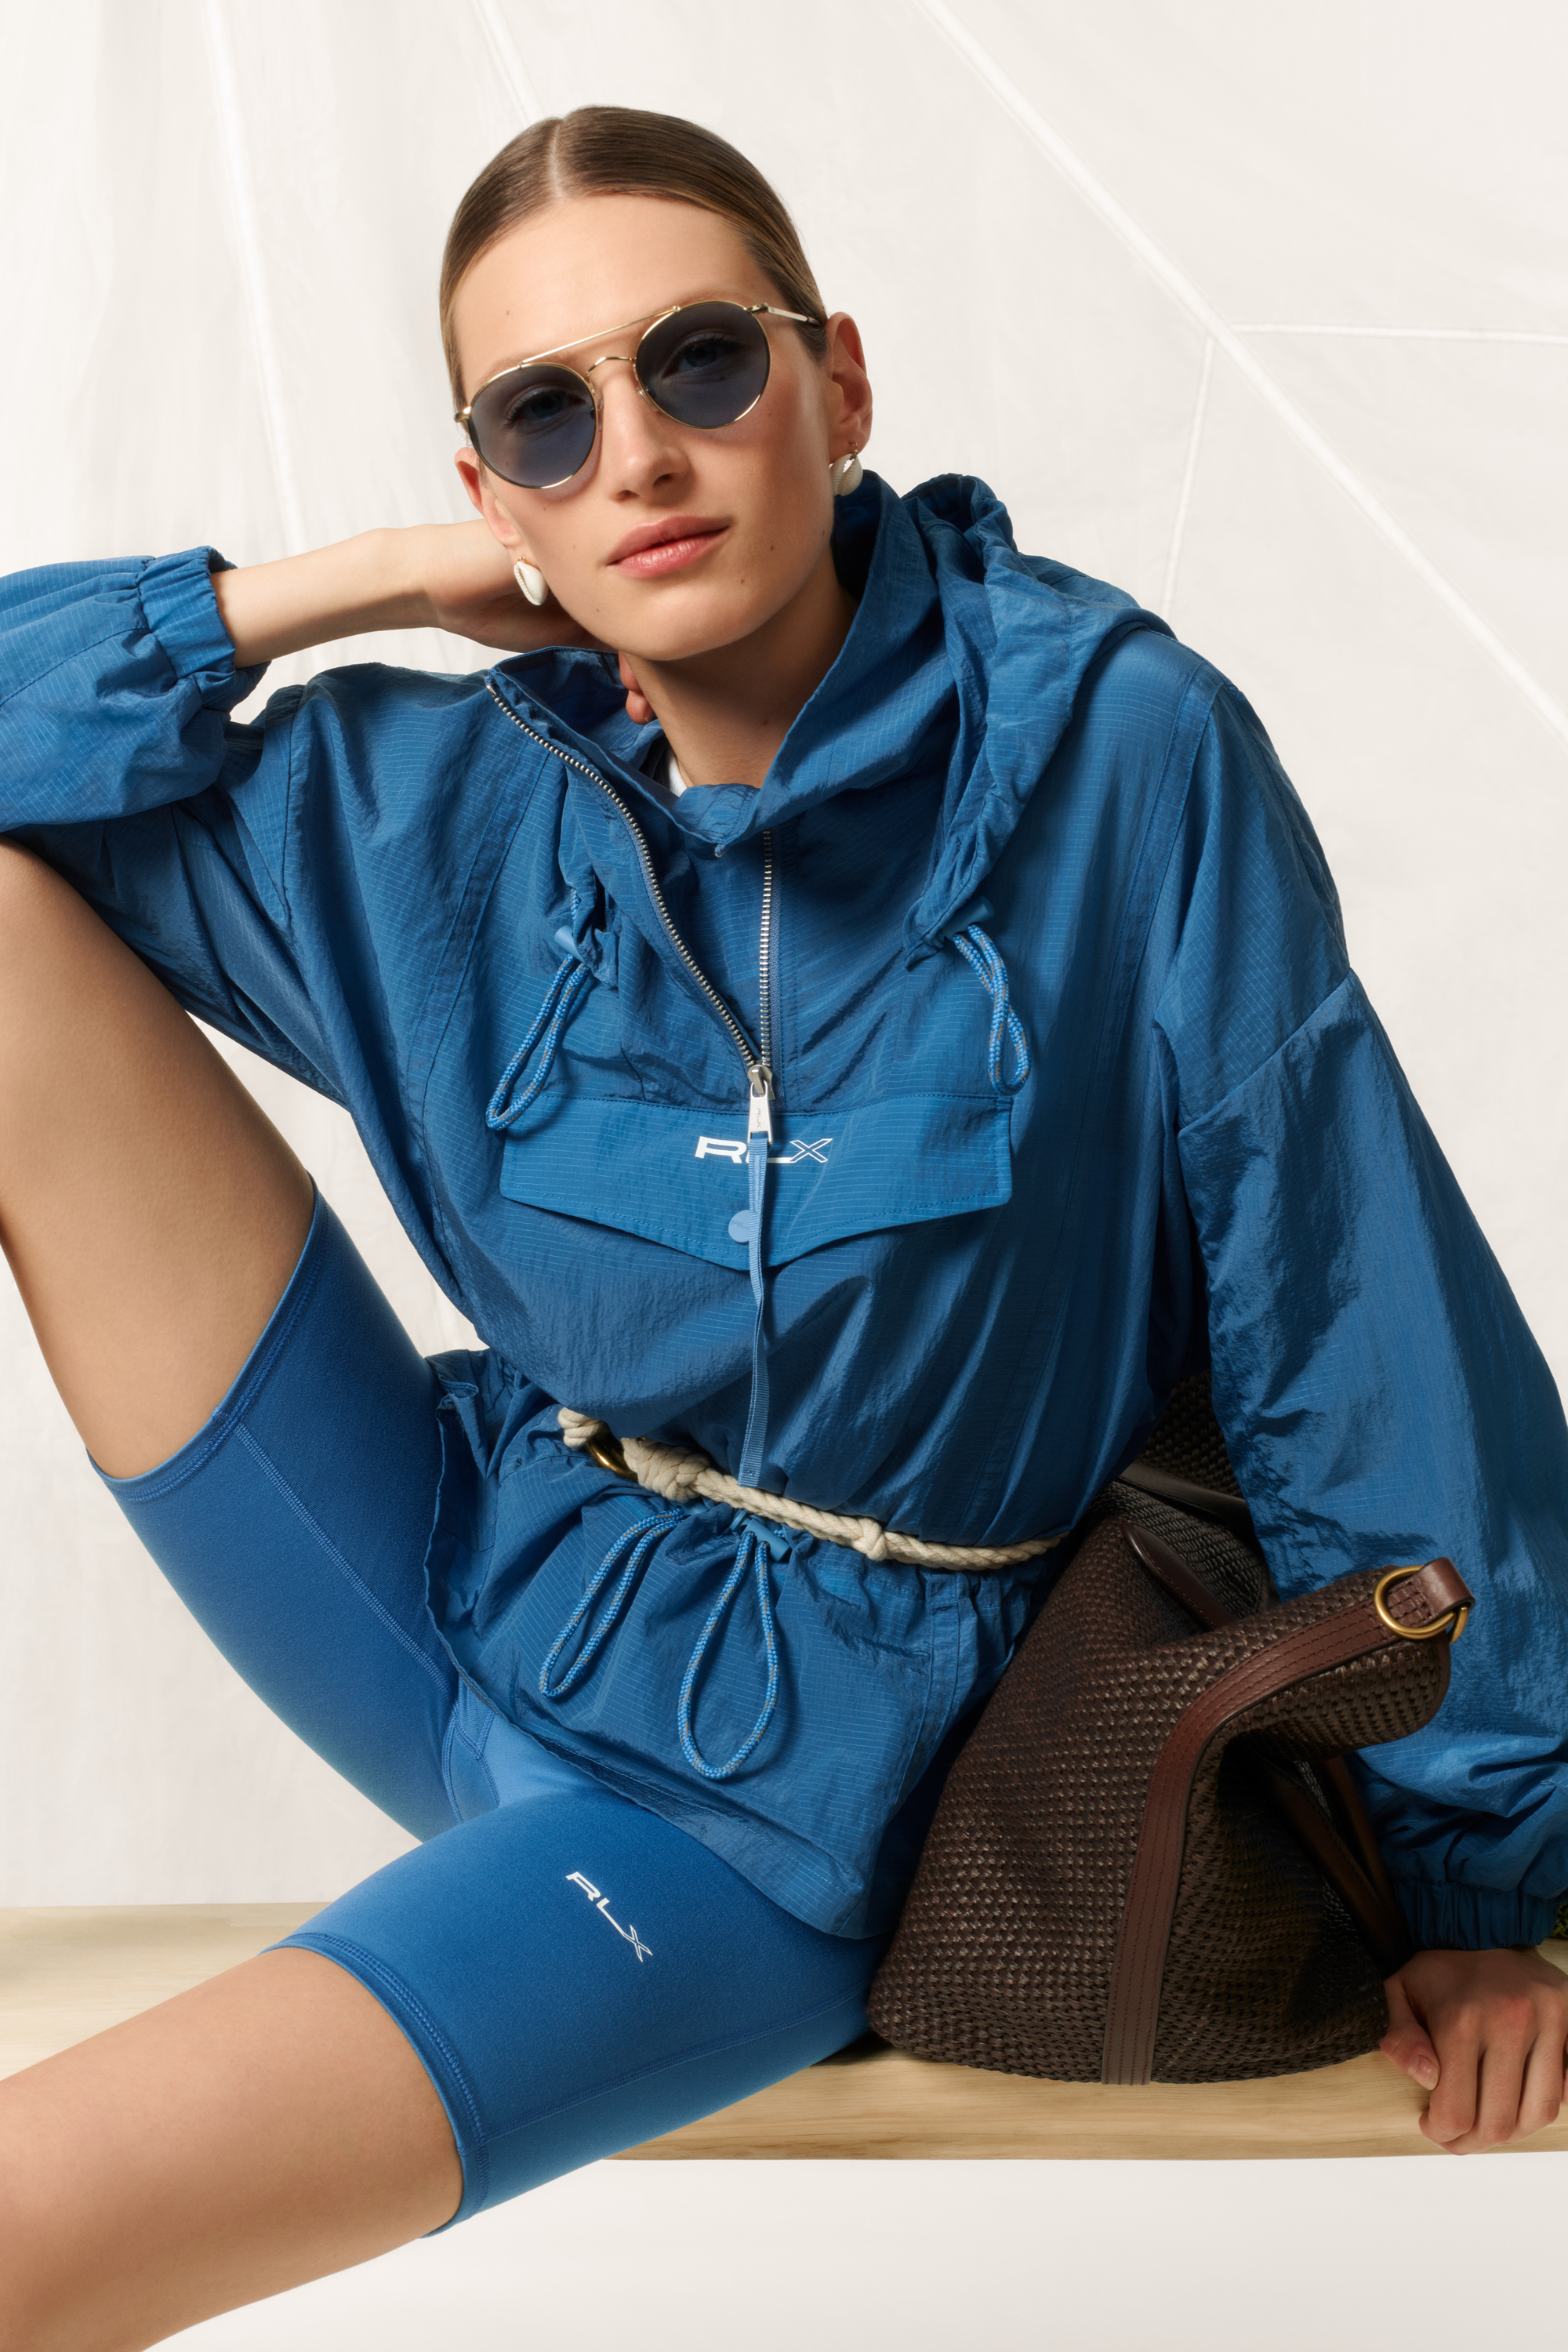 Best 15 Polo Windbreaker Outfit Ideas for Women